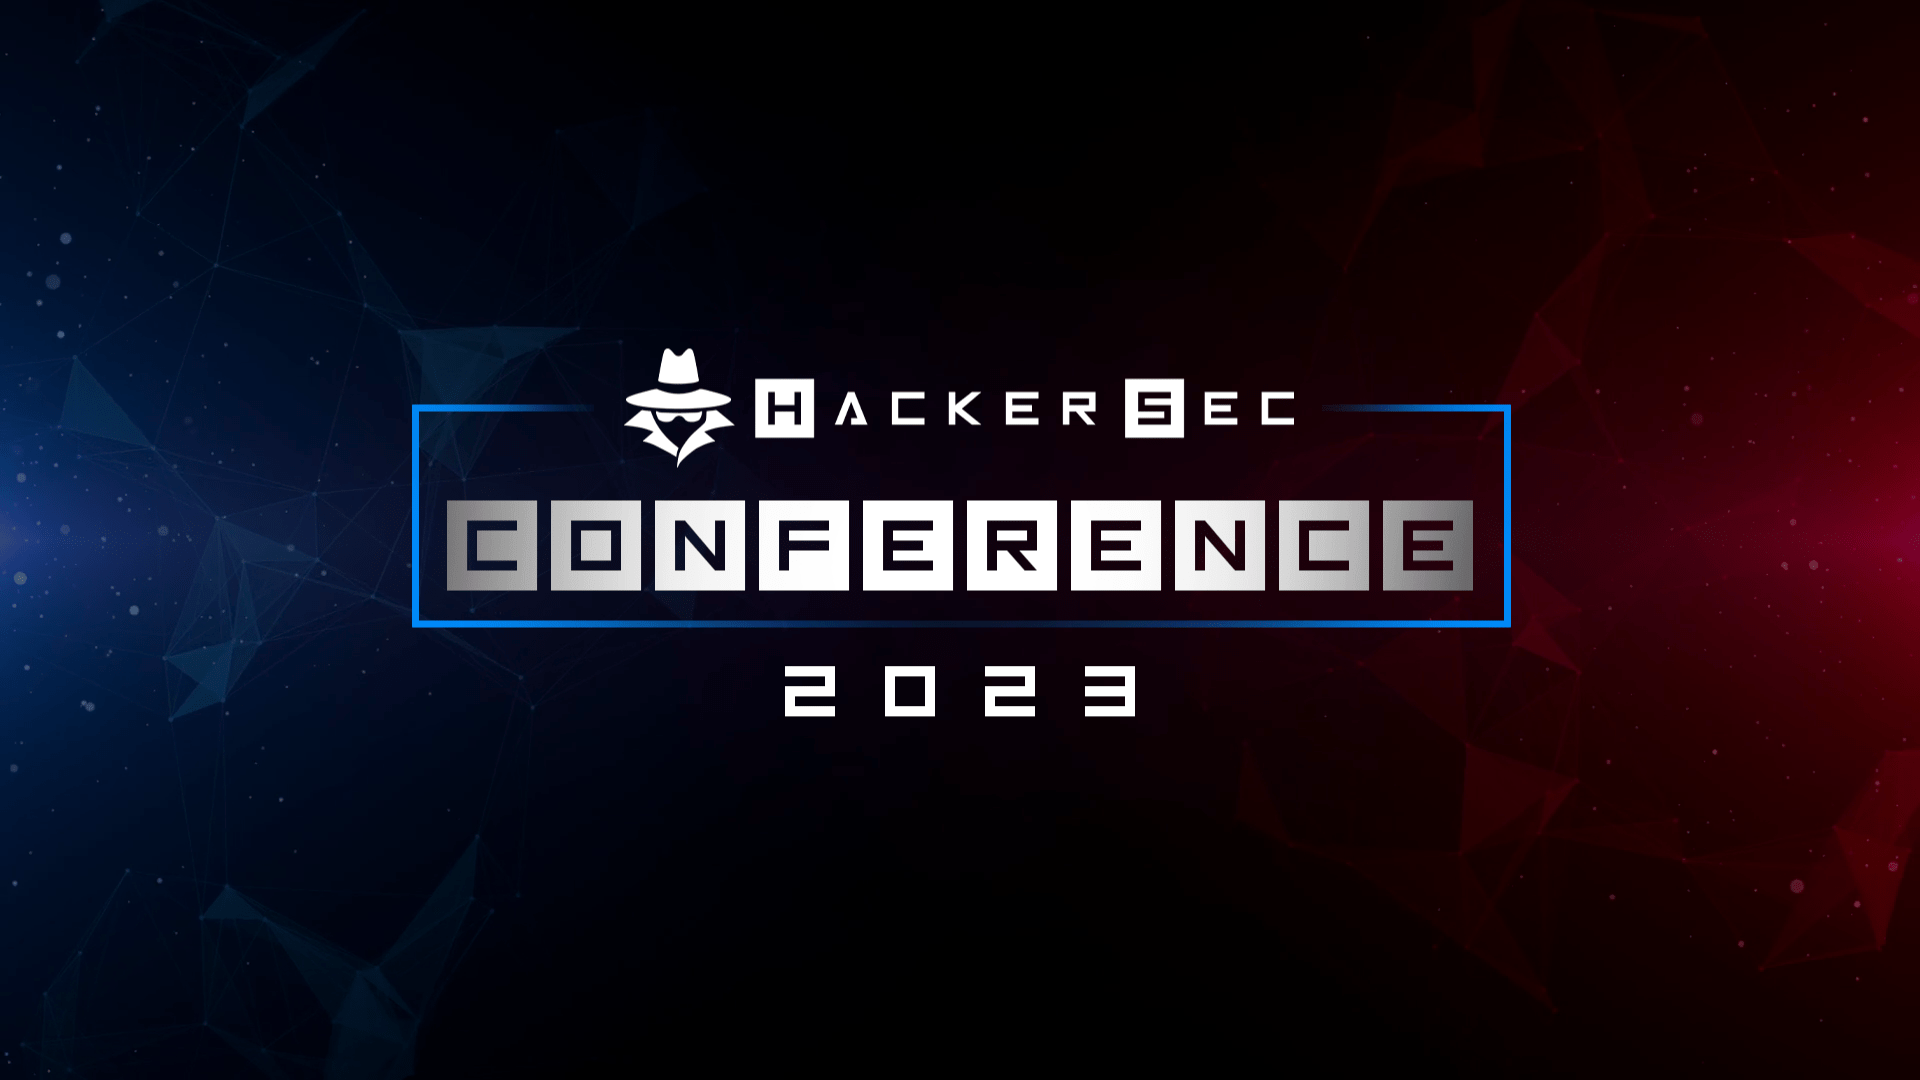 HackerSec Conference